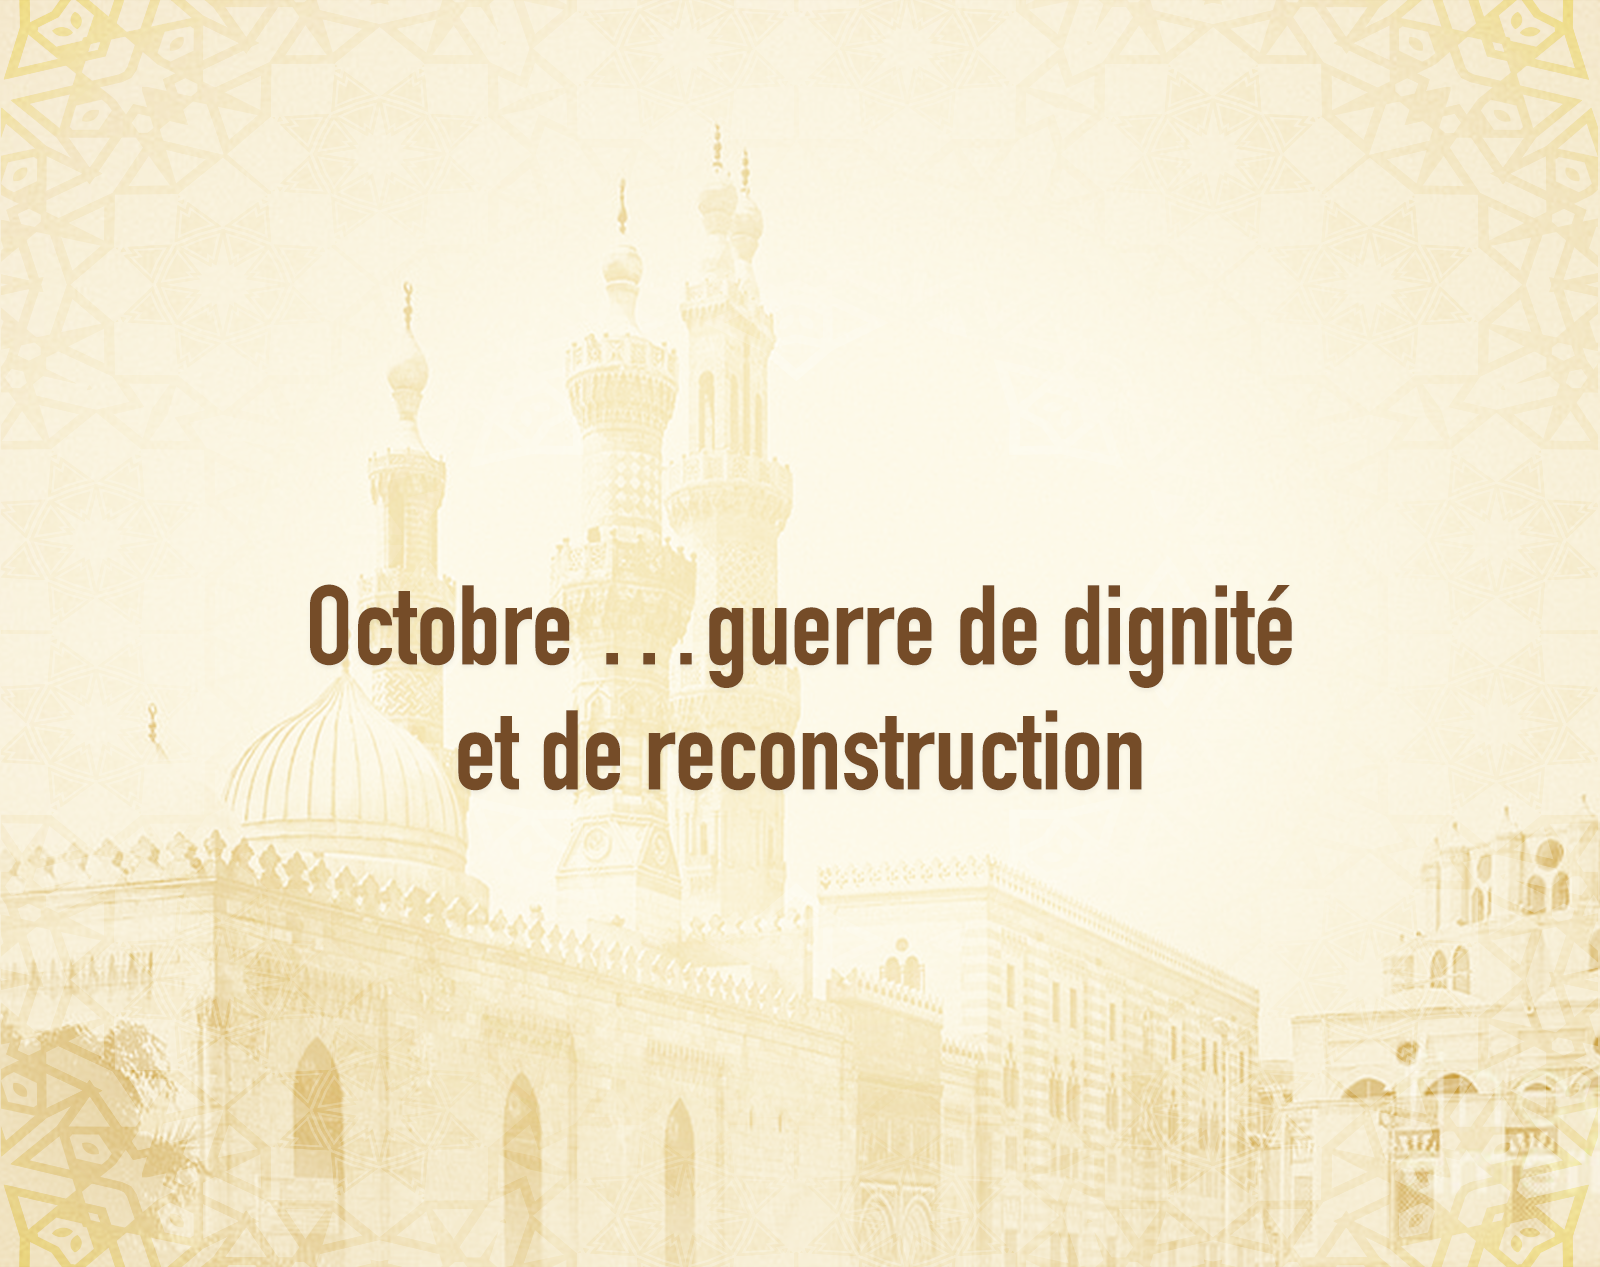 Octobre …guerre de dignité et de reconstruction.png